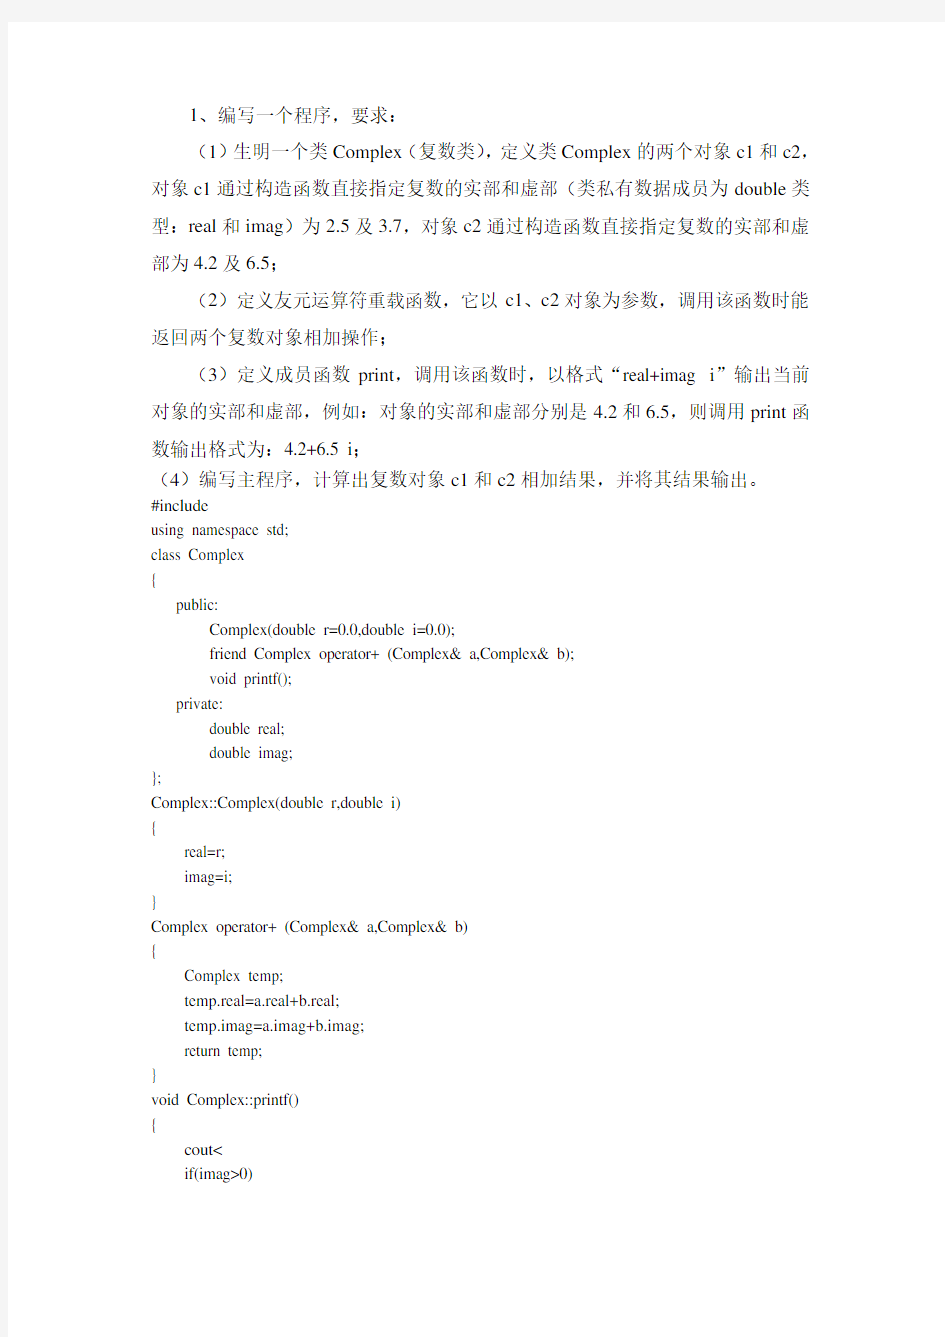 河北工业大学-C++实验报告实验四